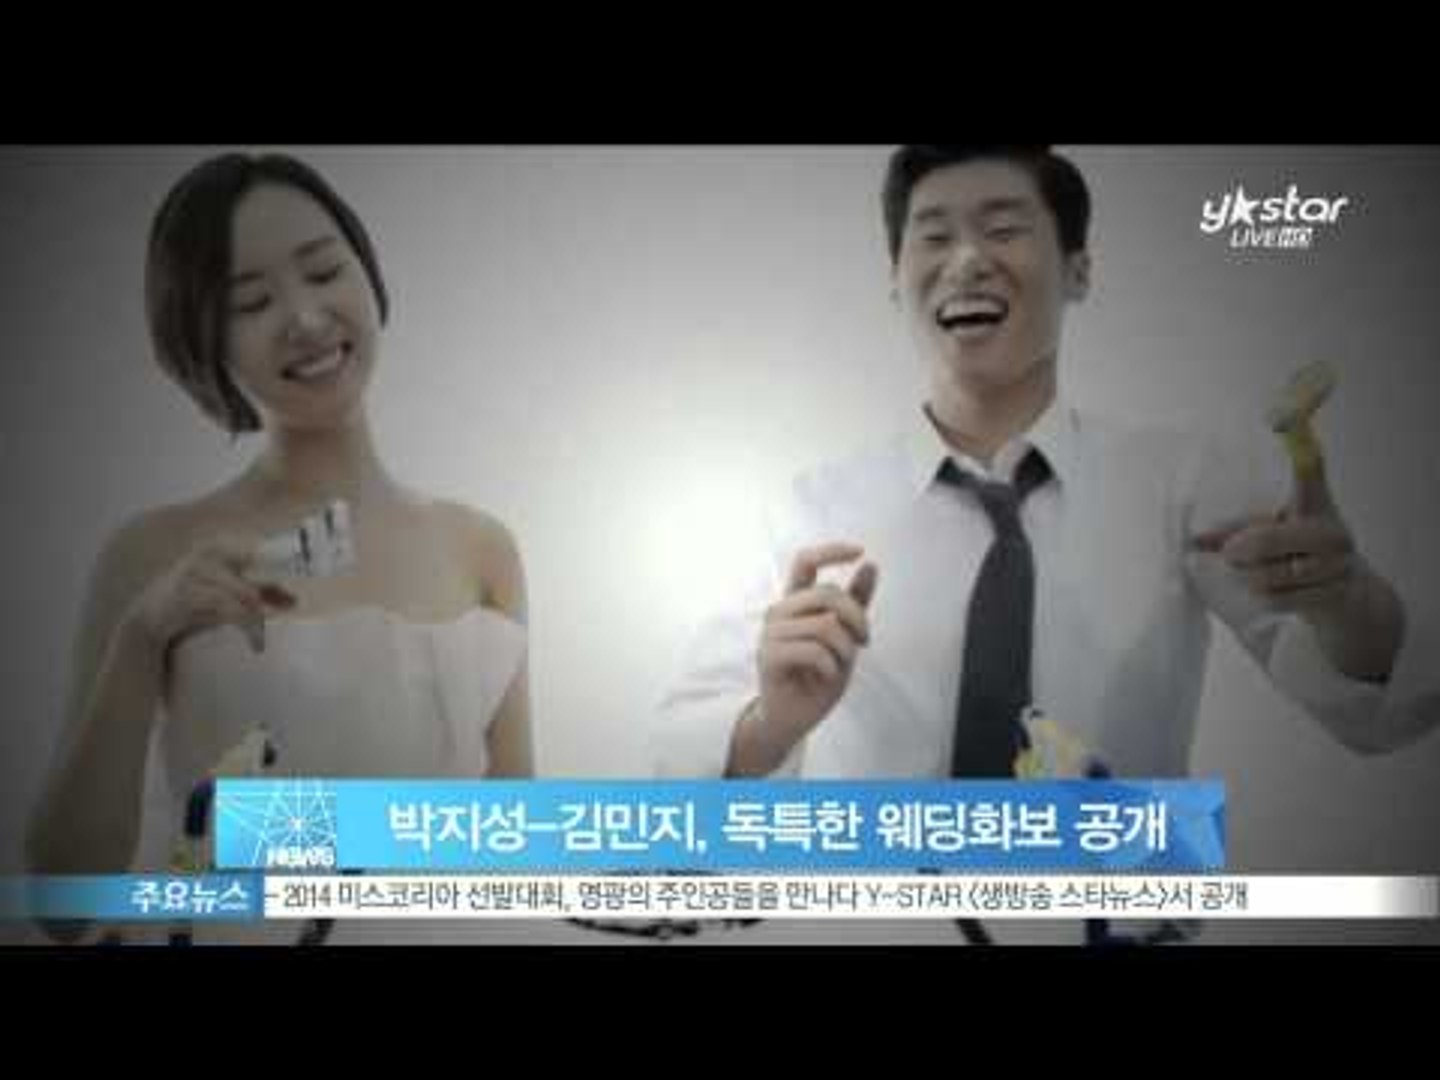 Y Star Park Jisung Kim Minji Show Wedding Album ë°•ì§€ì„± ê¹€ë¯¼ì§€ ì›¨ë